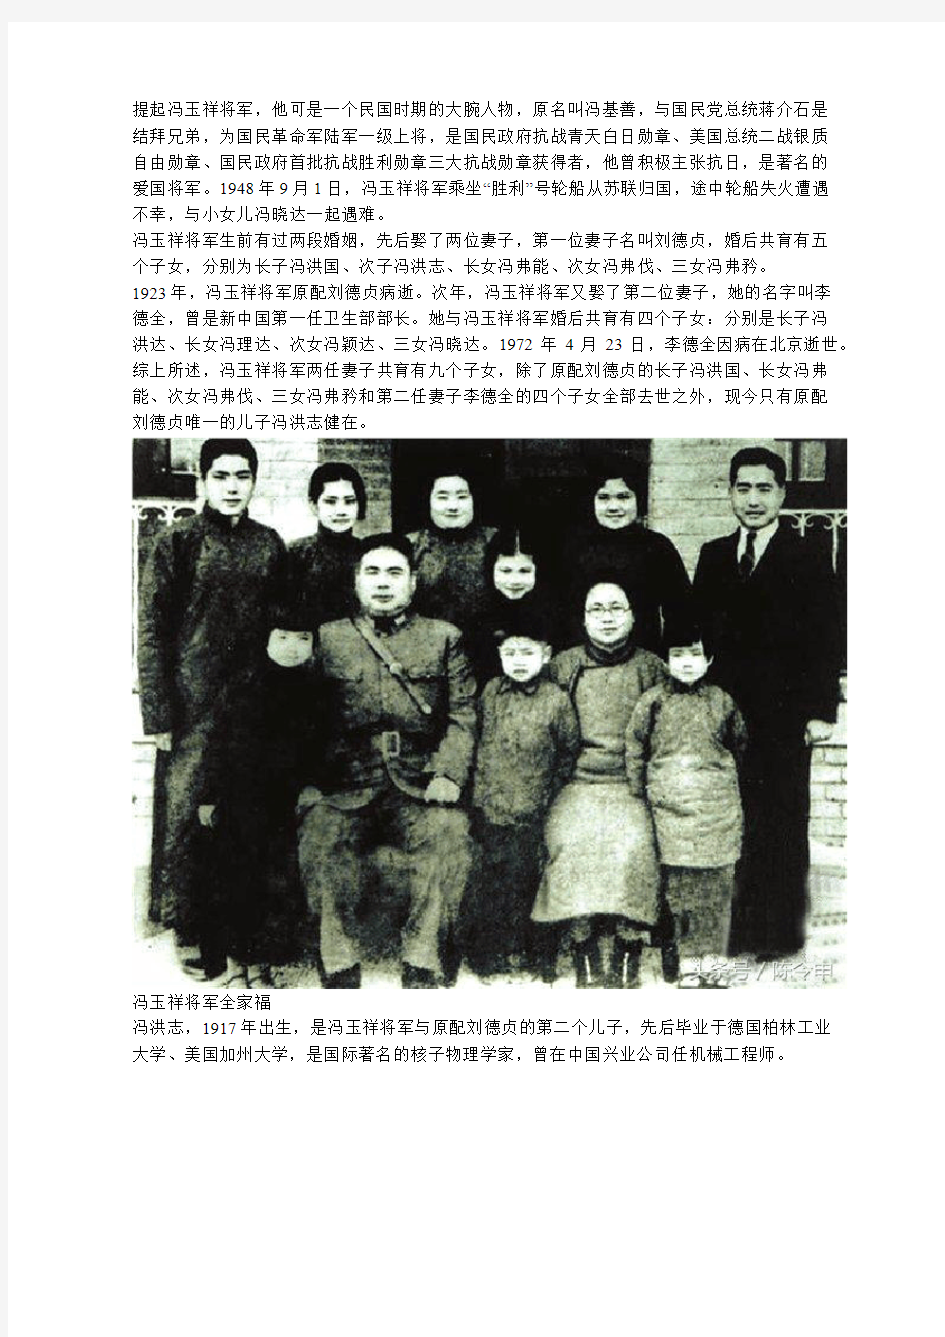 冯洪志：冯玉祥将军唯一健在的儿子,现年100岁